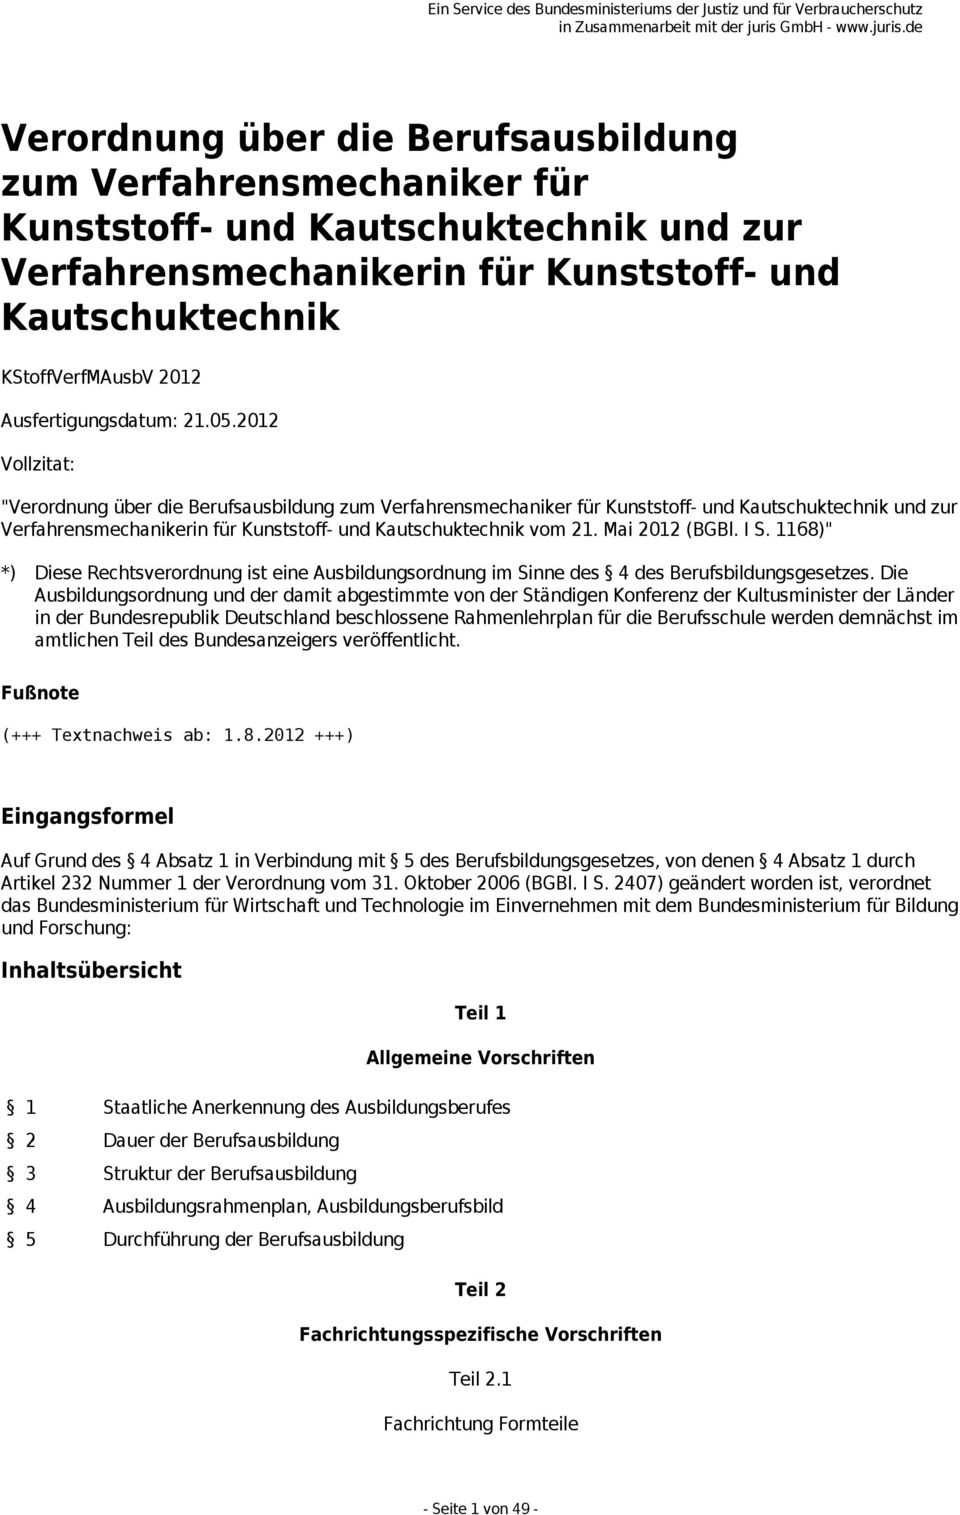 2012 Vollzitat: "Verordnung über die Berufsausbildung zum Verfahrensmechaniker für Kunststoff- und Kautschuktechnik und zur Verfahrensmechanikerin für Kunststoff- und Kautschuktechnik vom 21.